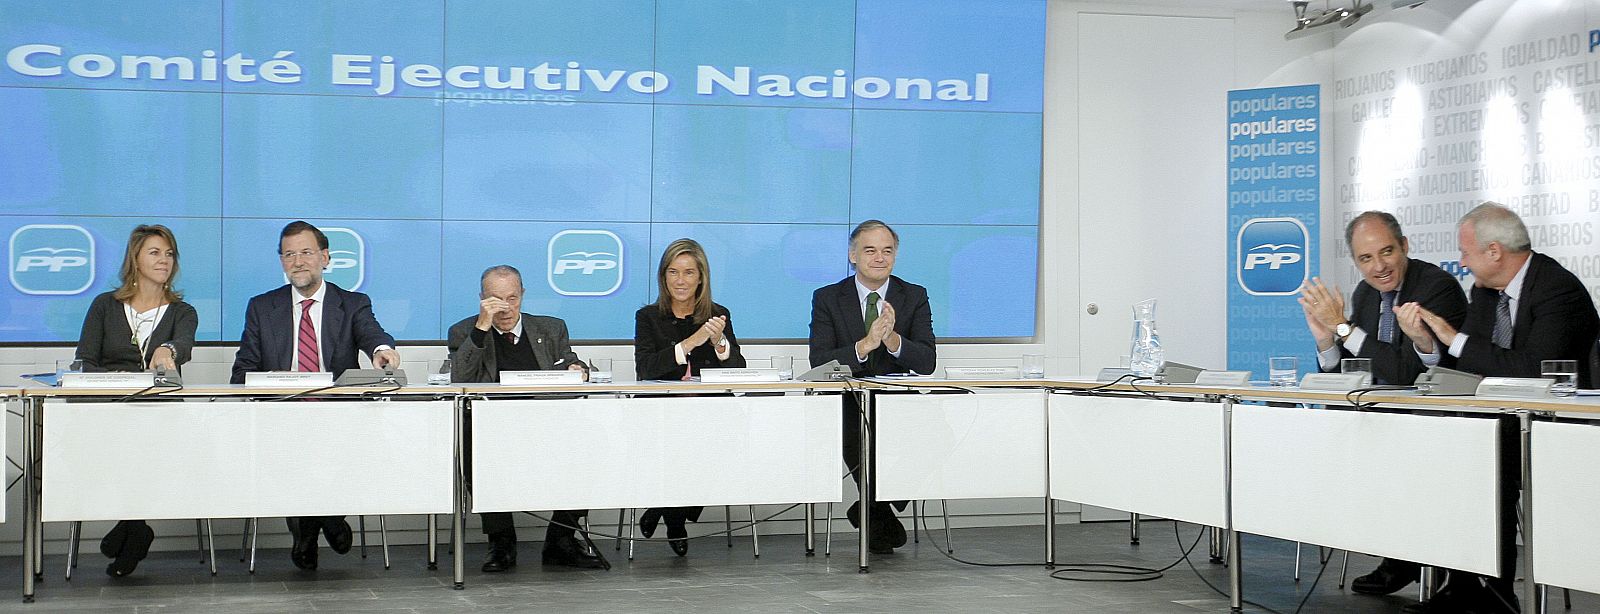 Mariano Rajoy acompañado de Manuel Fraga, Esteban González Pons, Ana Mato y los presidentes de la Generalitat valenciana, Francisco Camps, y de Murcia, Ramón Luis Valcárcel.